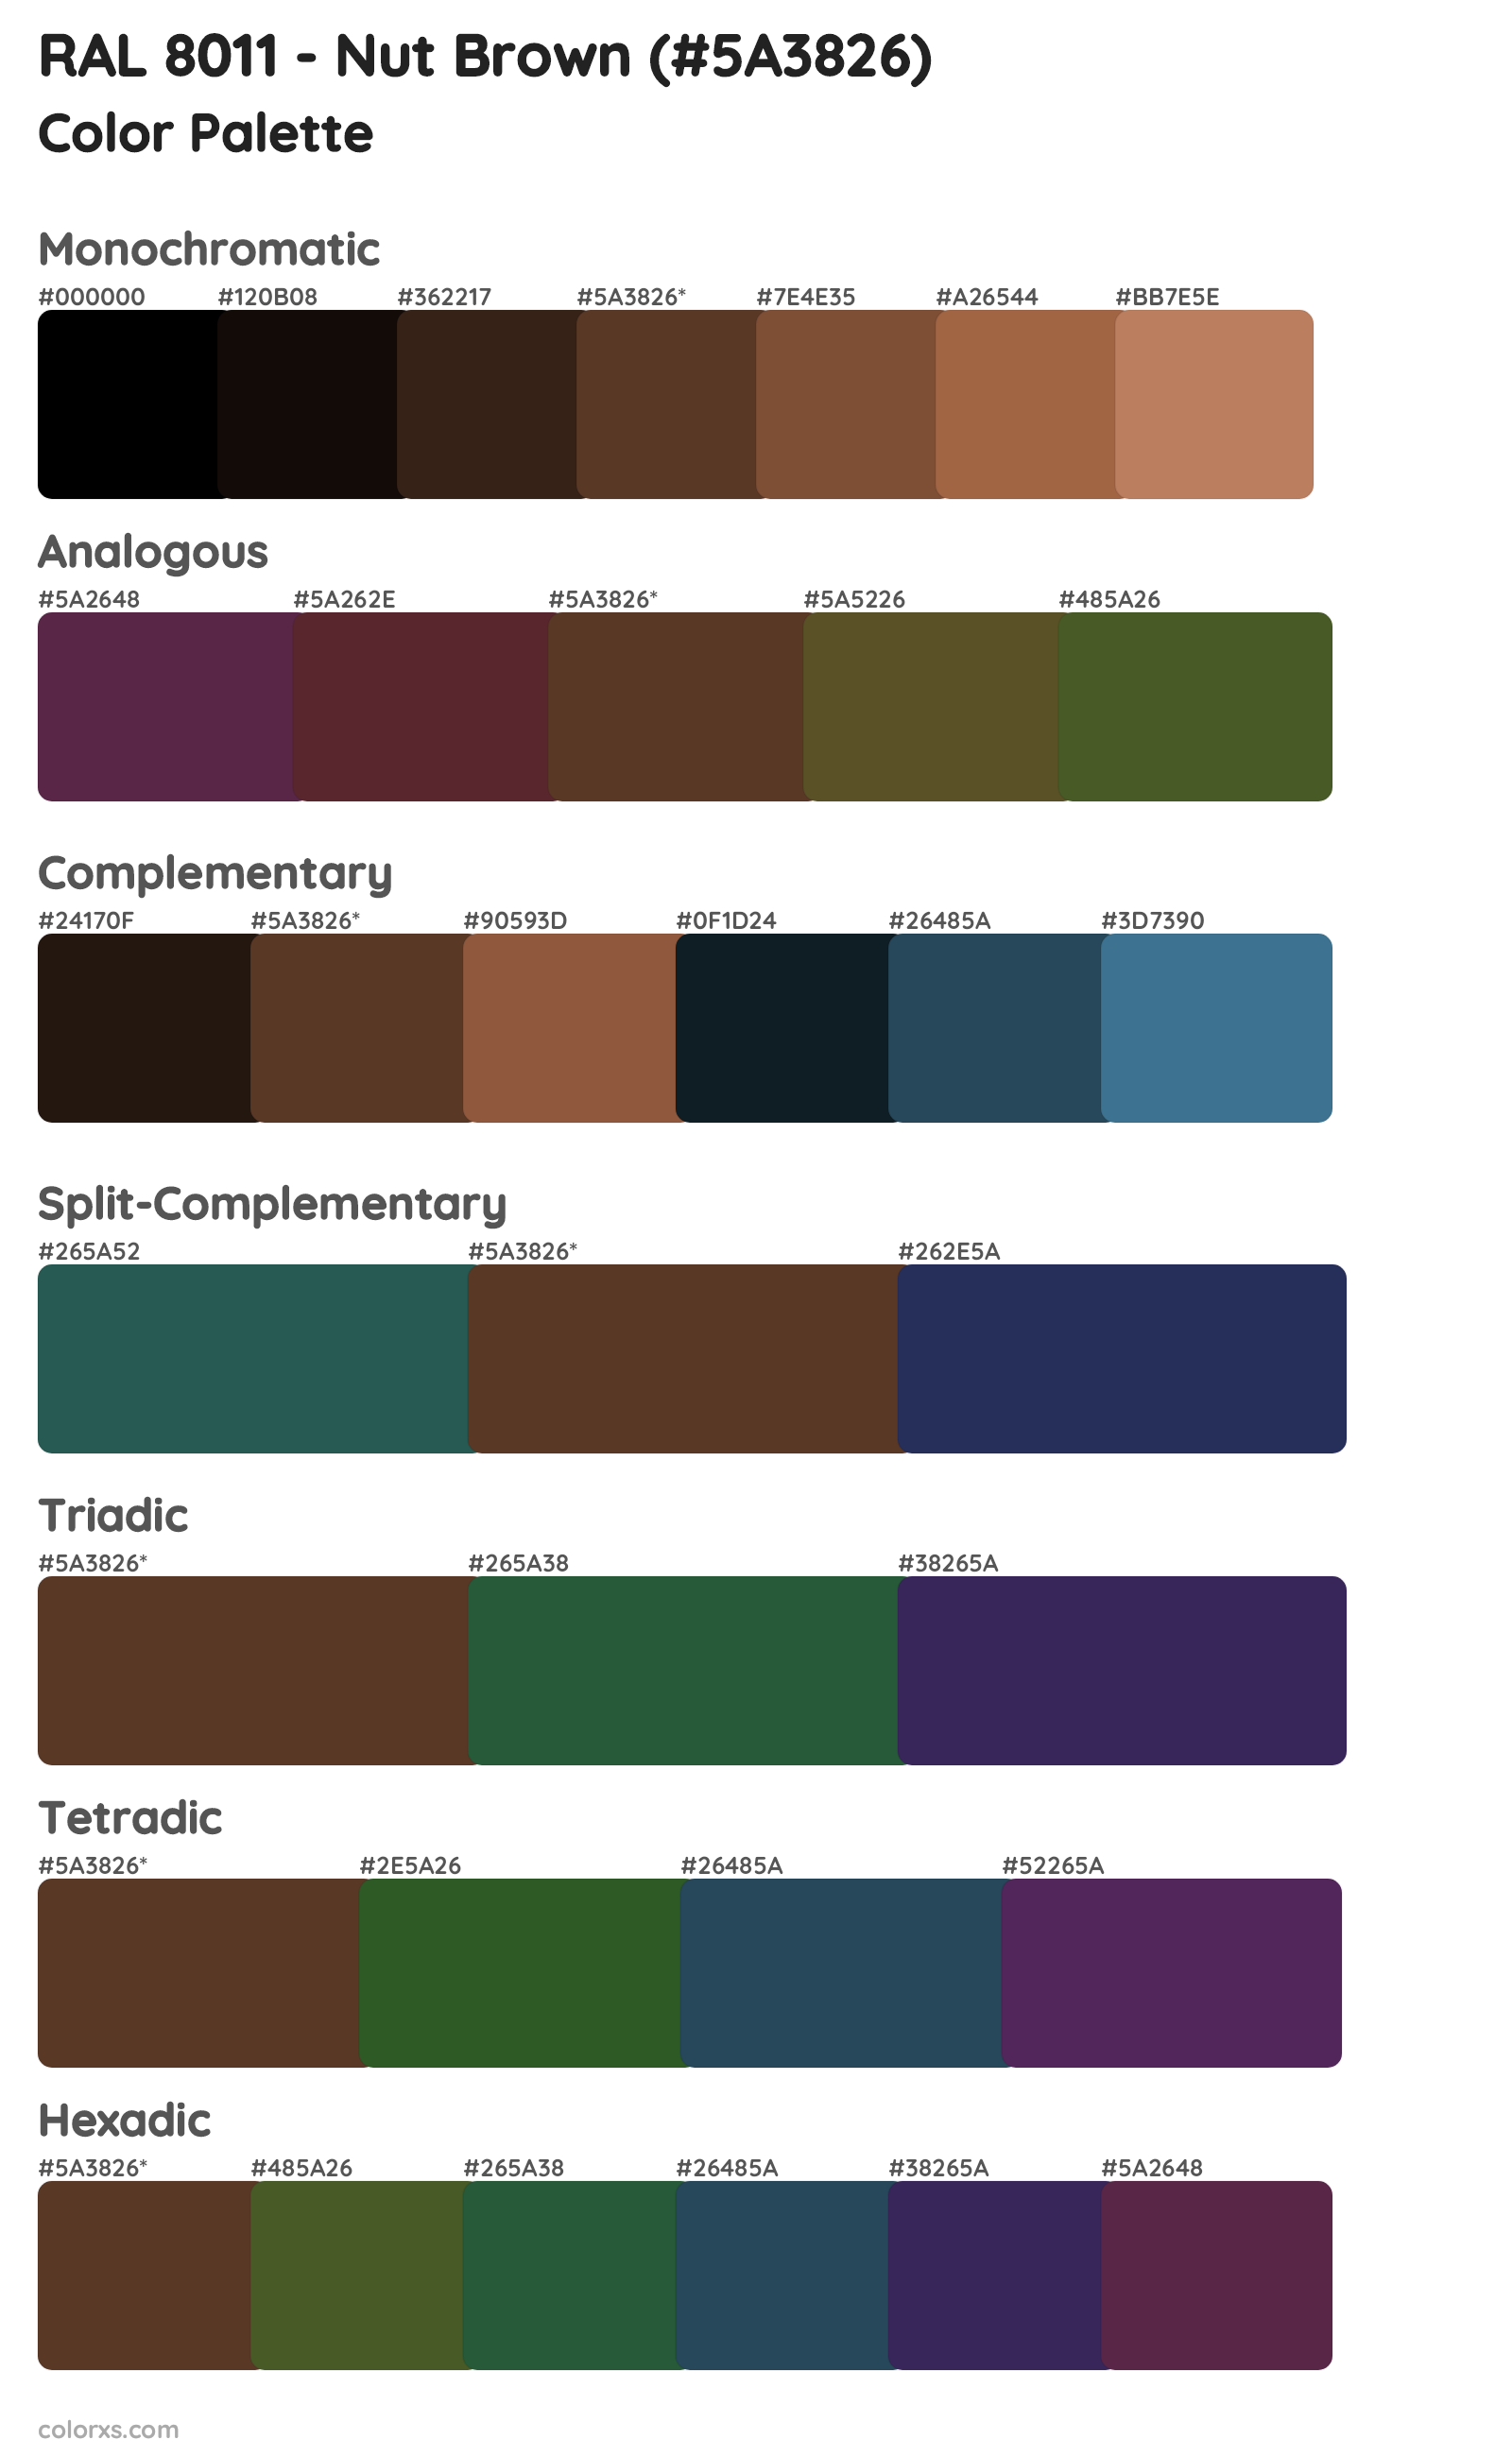 RAL 8011 - Nut Brown Color Scheme Palettes